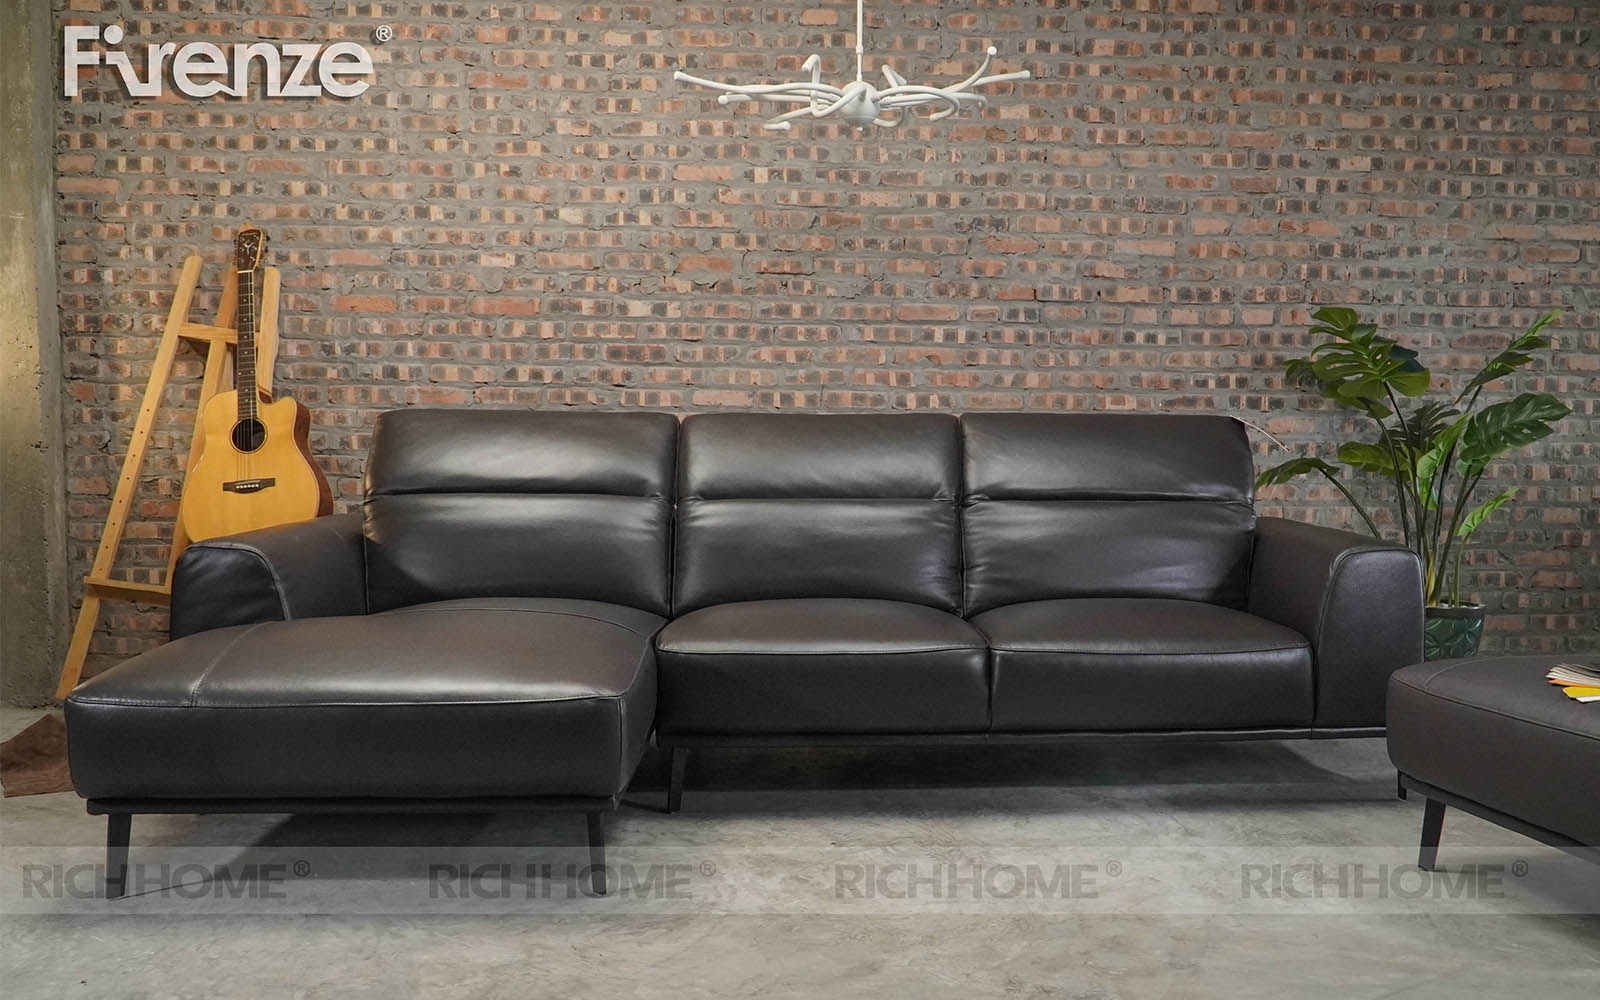 20 mẫu ghế sofa góc da màu đen đẹp cho phòng khách - Ảnh 5